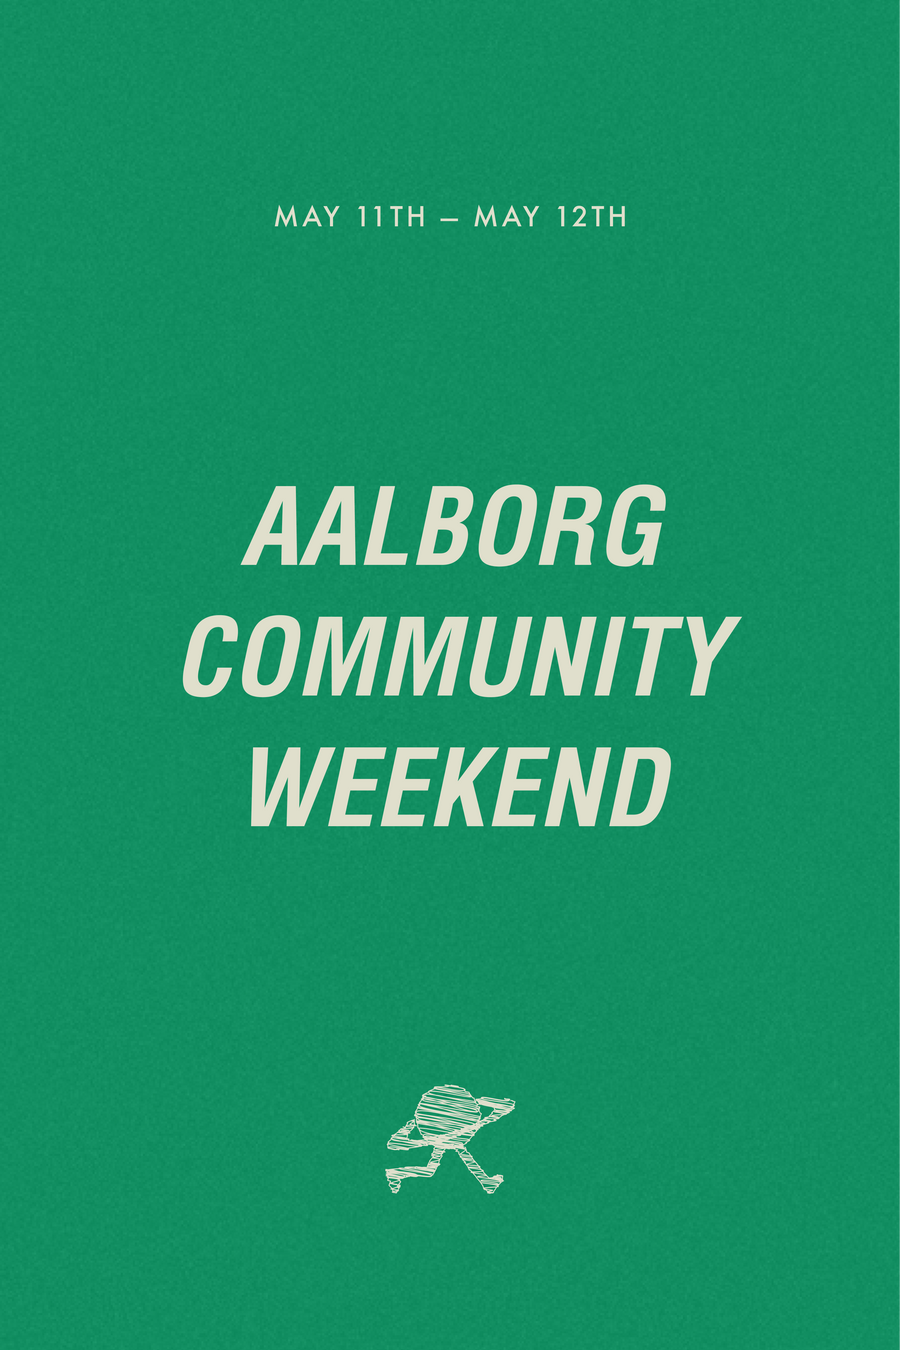 AALBORG COMMUNITY WEEKEND